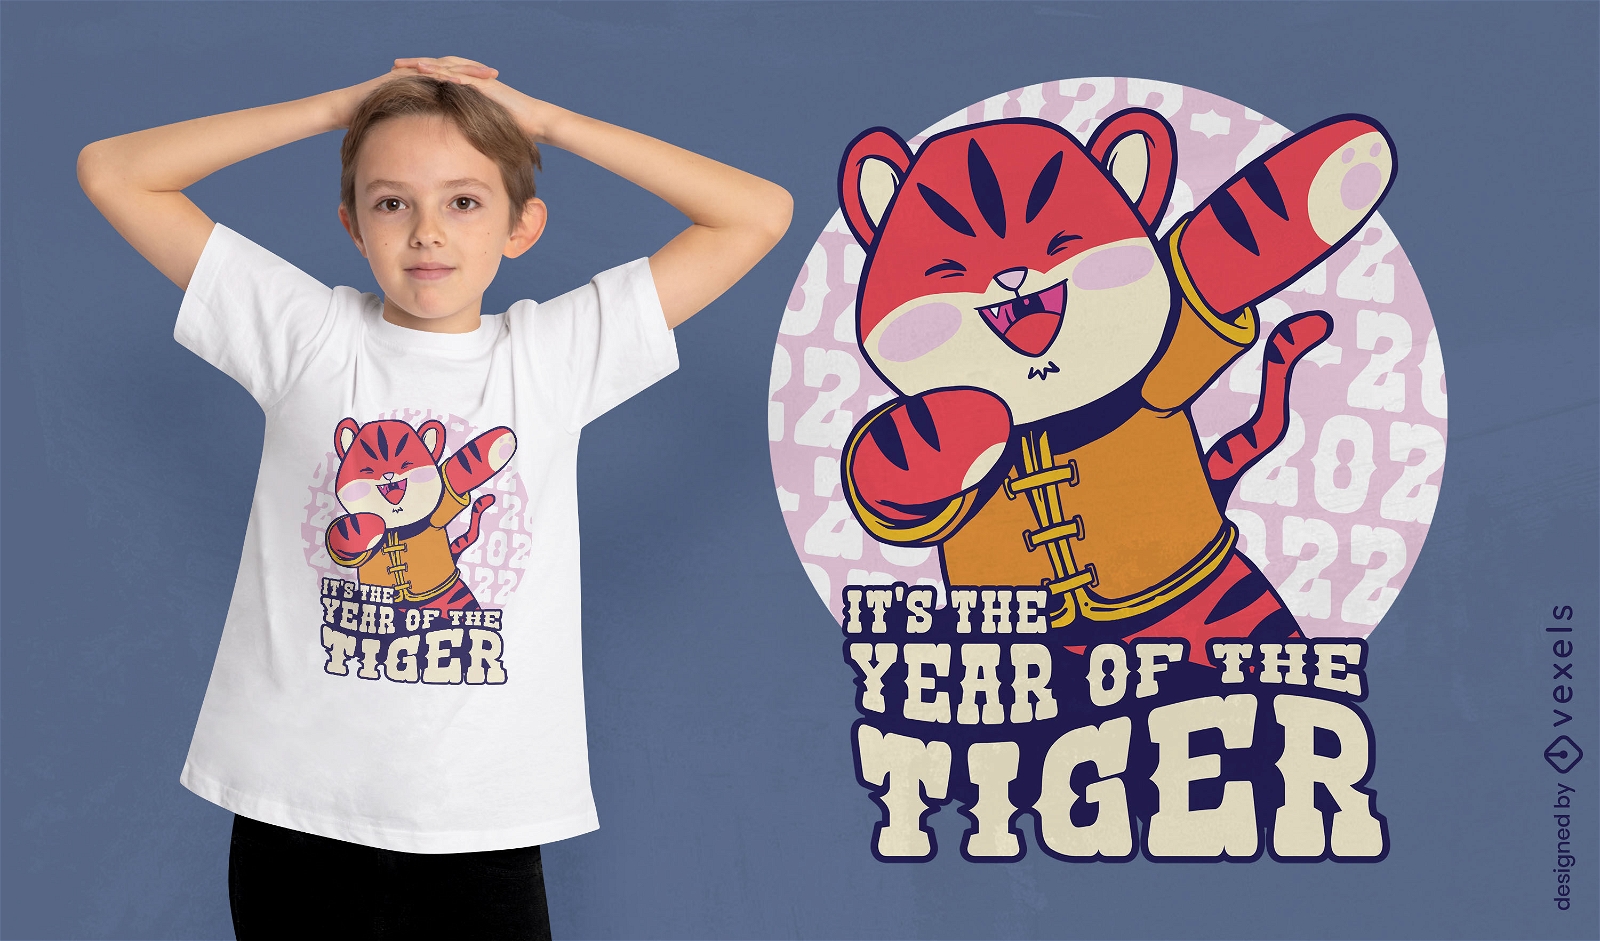 Dise?o de camiseta de tigre Dabbing de a?o nuevo chino